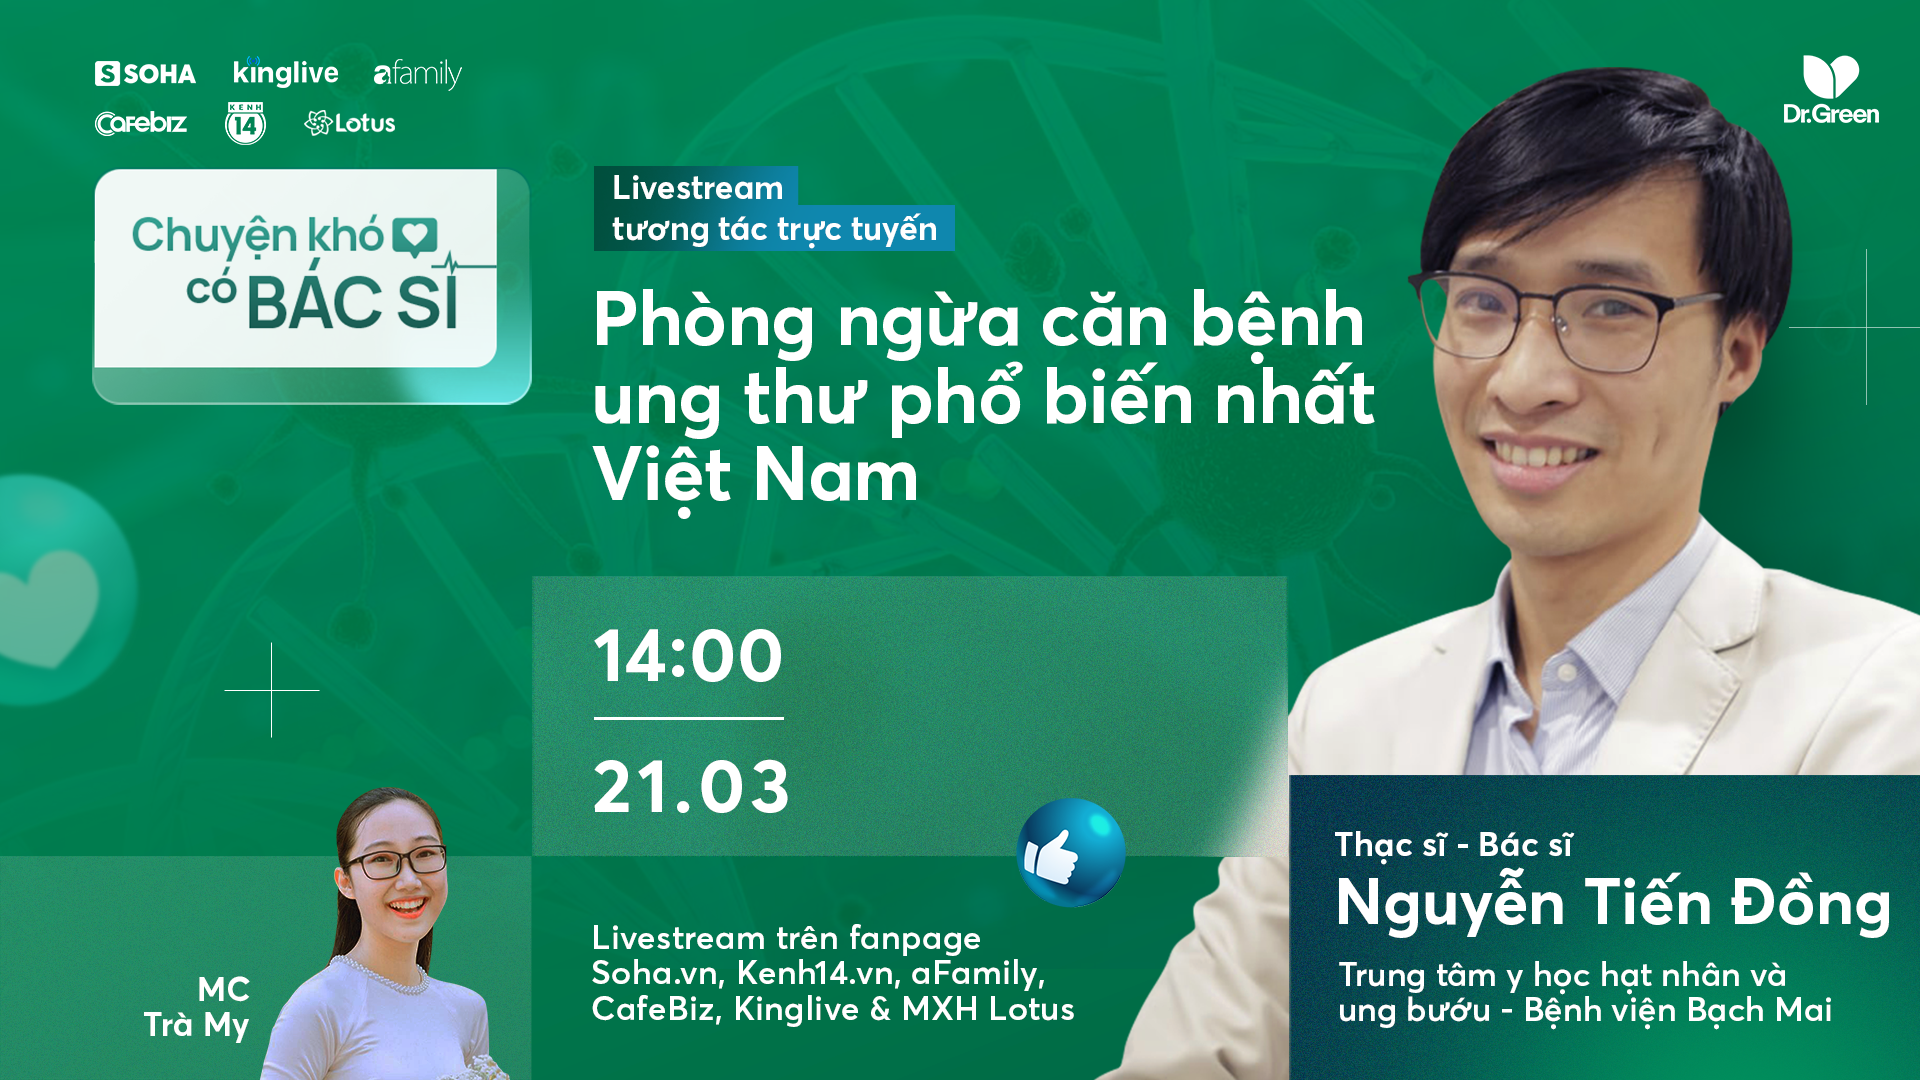 Mời độc giả đặt câu hỏi livestream về ung thư gan - căn bệnh phổ biến hàng đầu ở Việt Nam - Ảnh 1.